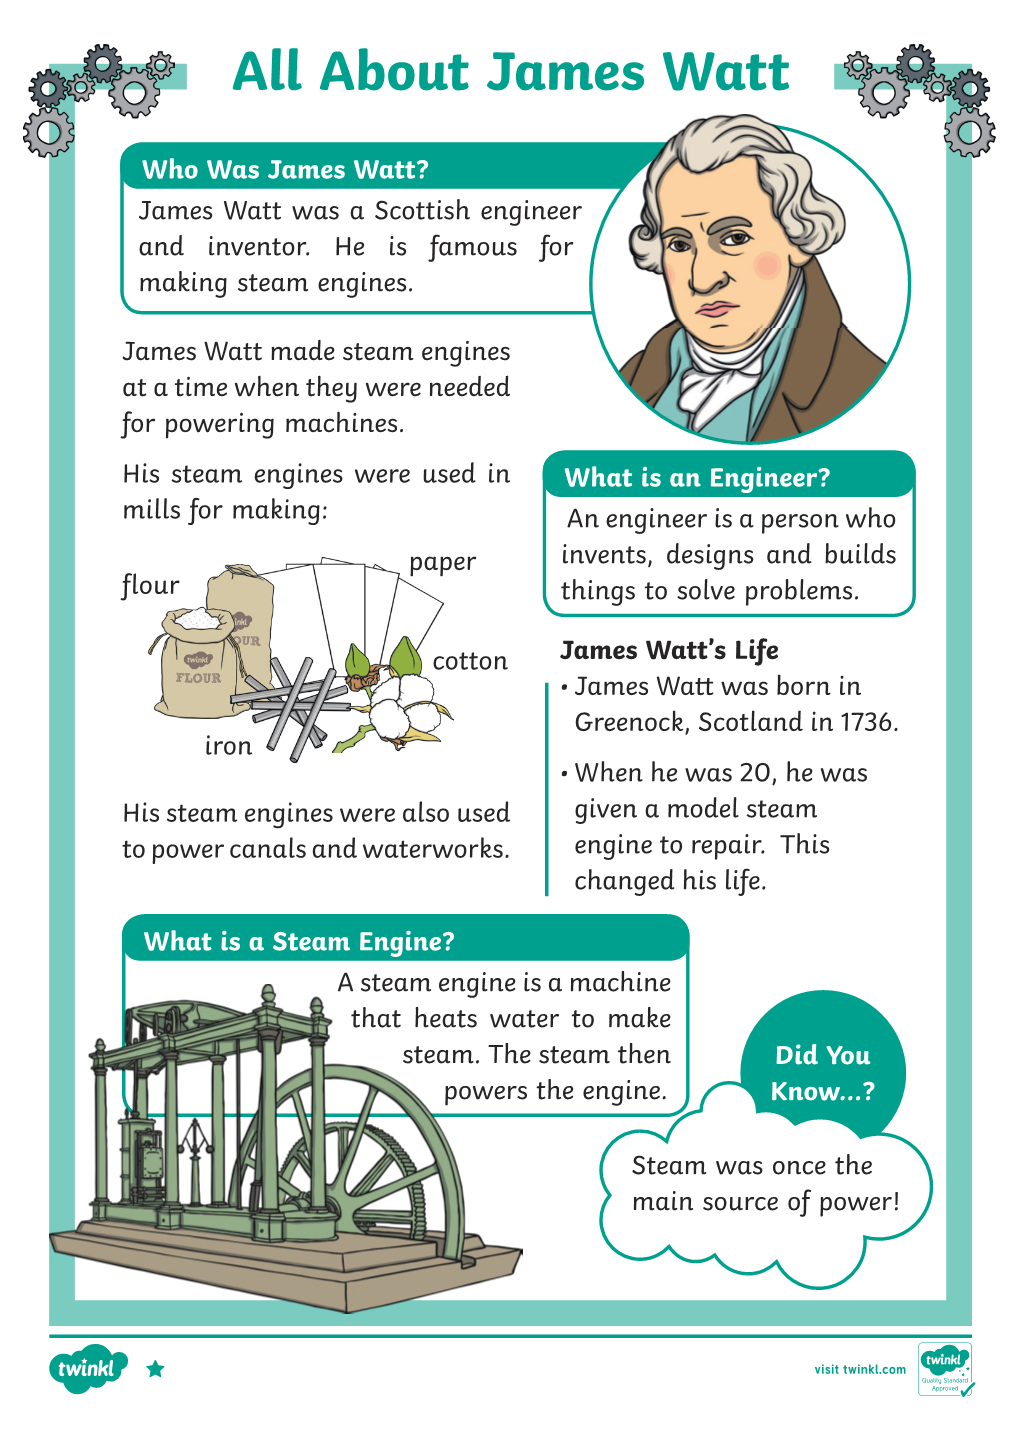 All About James Watt